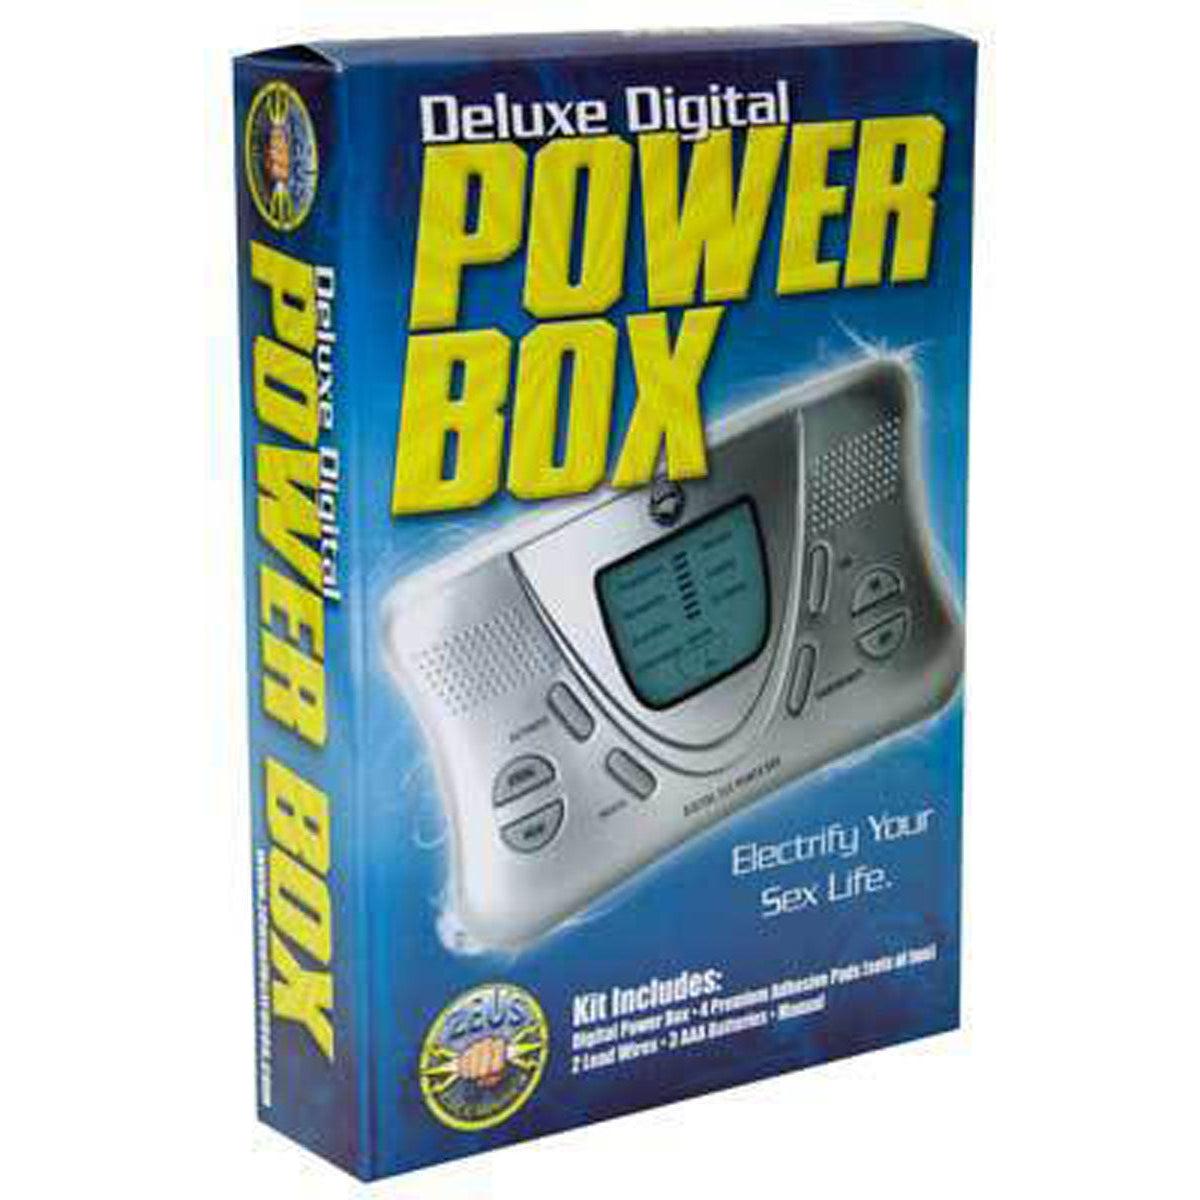 Deluxe Digital Power